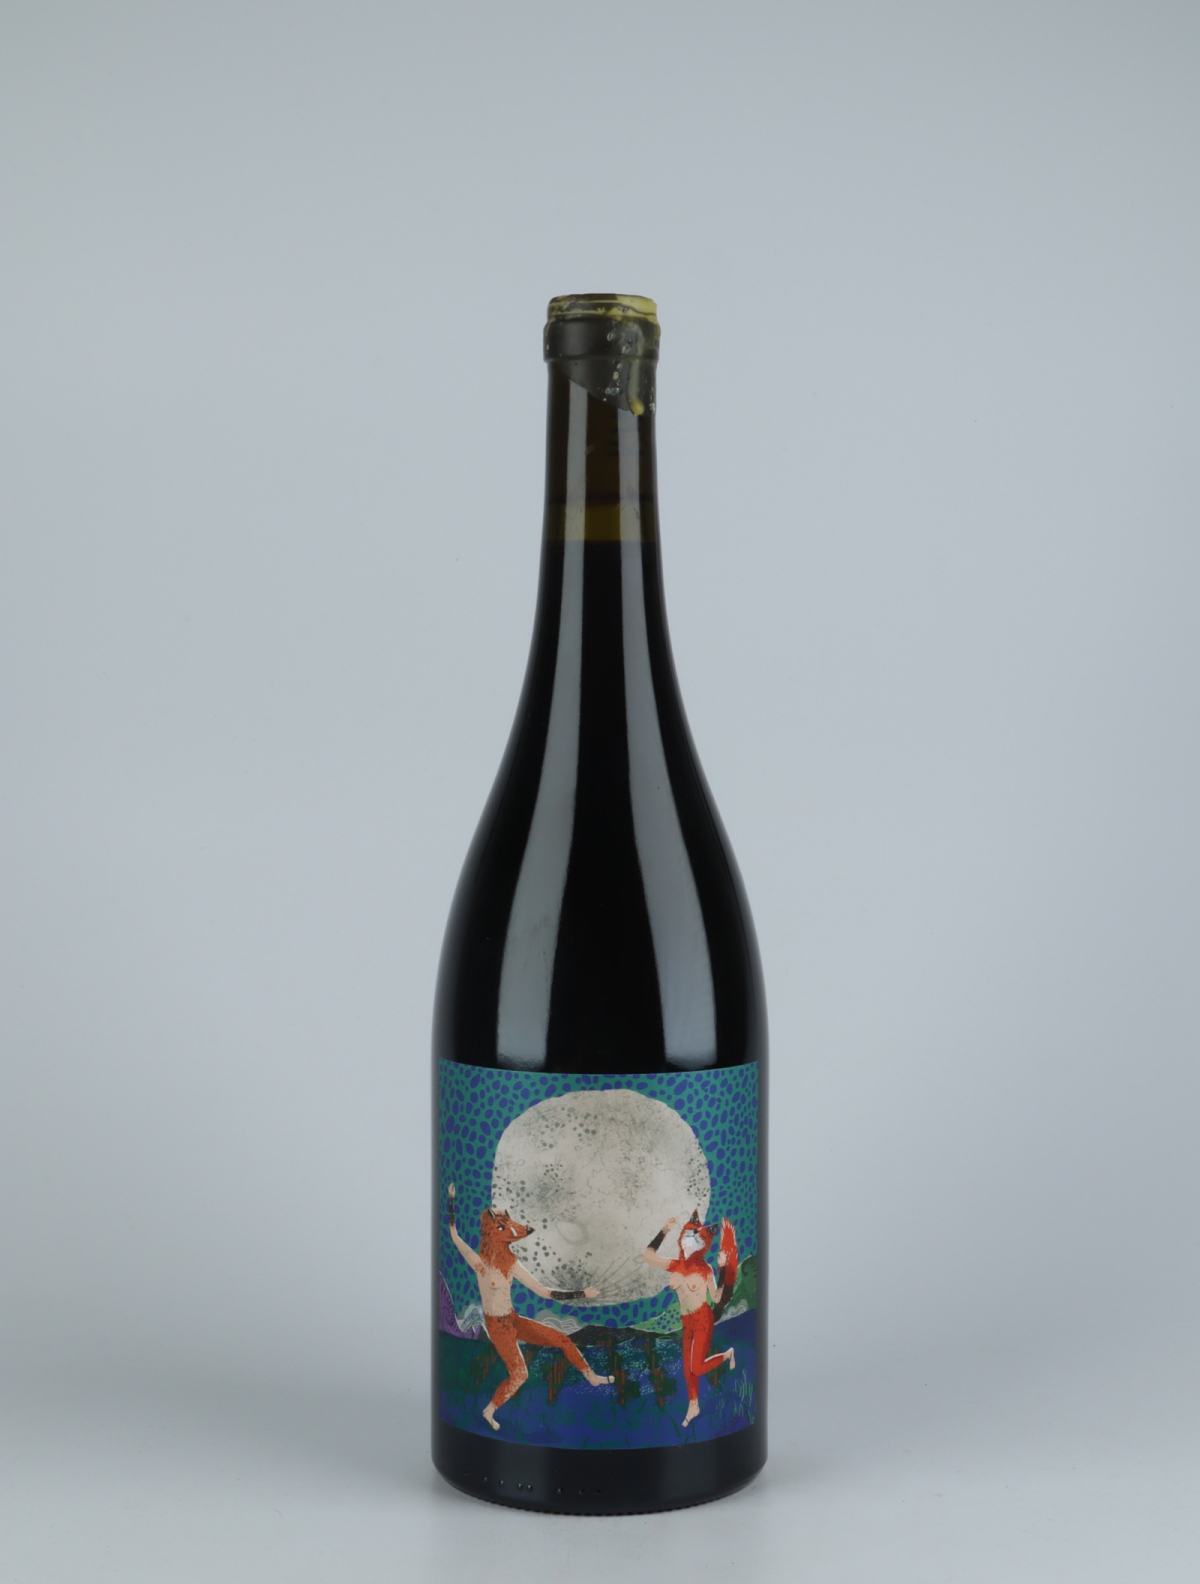 En flaske 2020 Luna Llena Rødvin fra Kindeli, Nelson i New Zealand